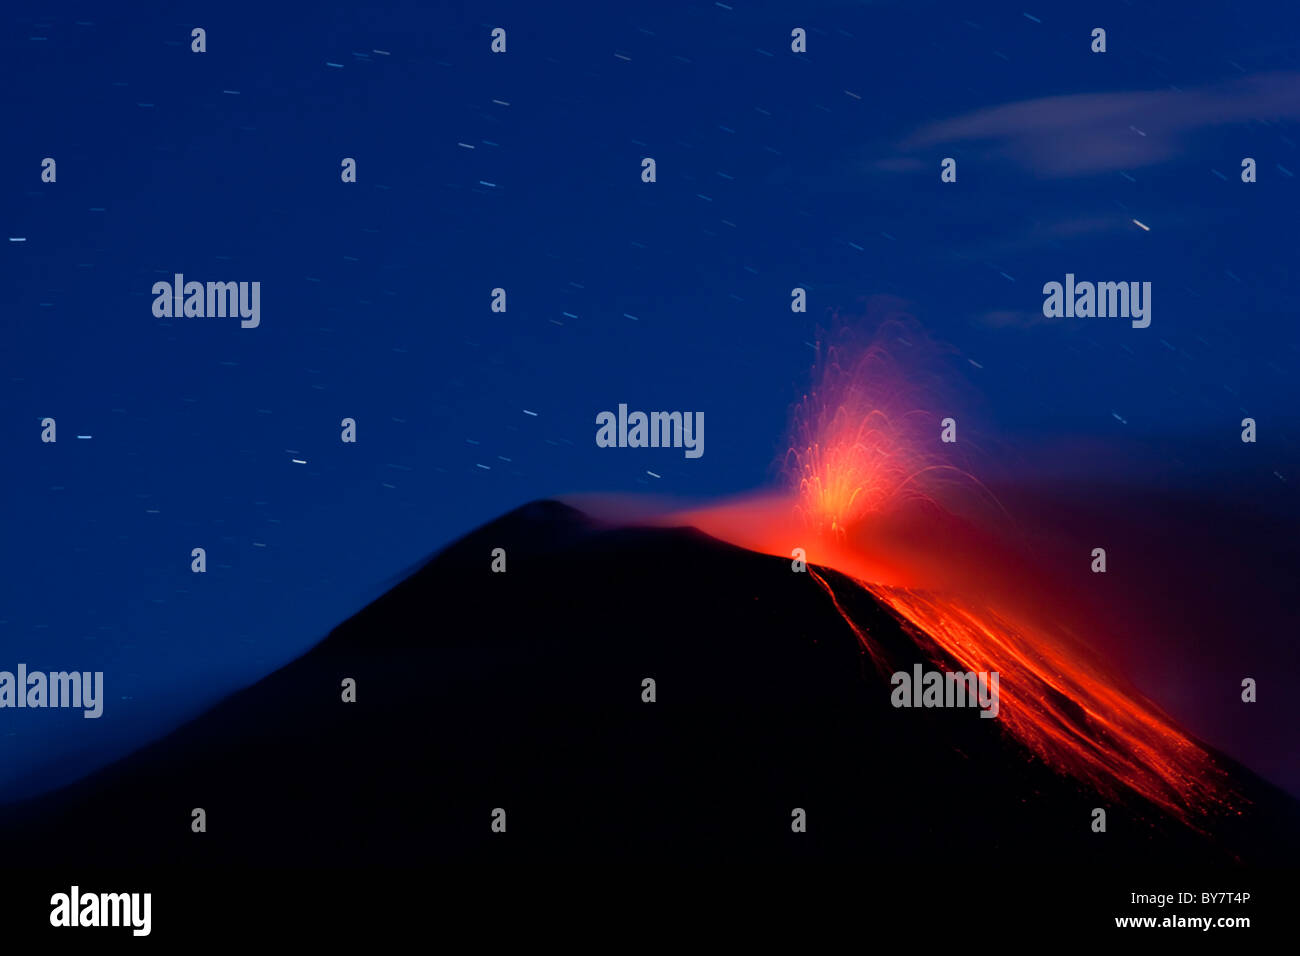 Tungurahua volcano erupting with lava flow, Banos, Ecuador Stock Photo